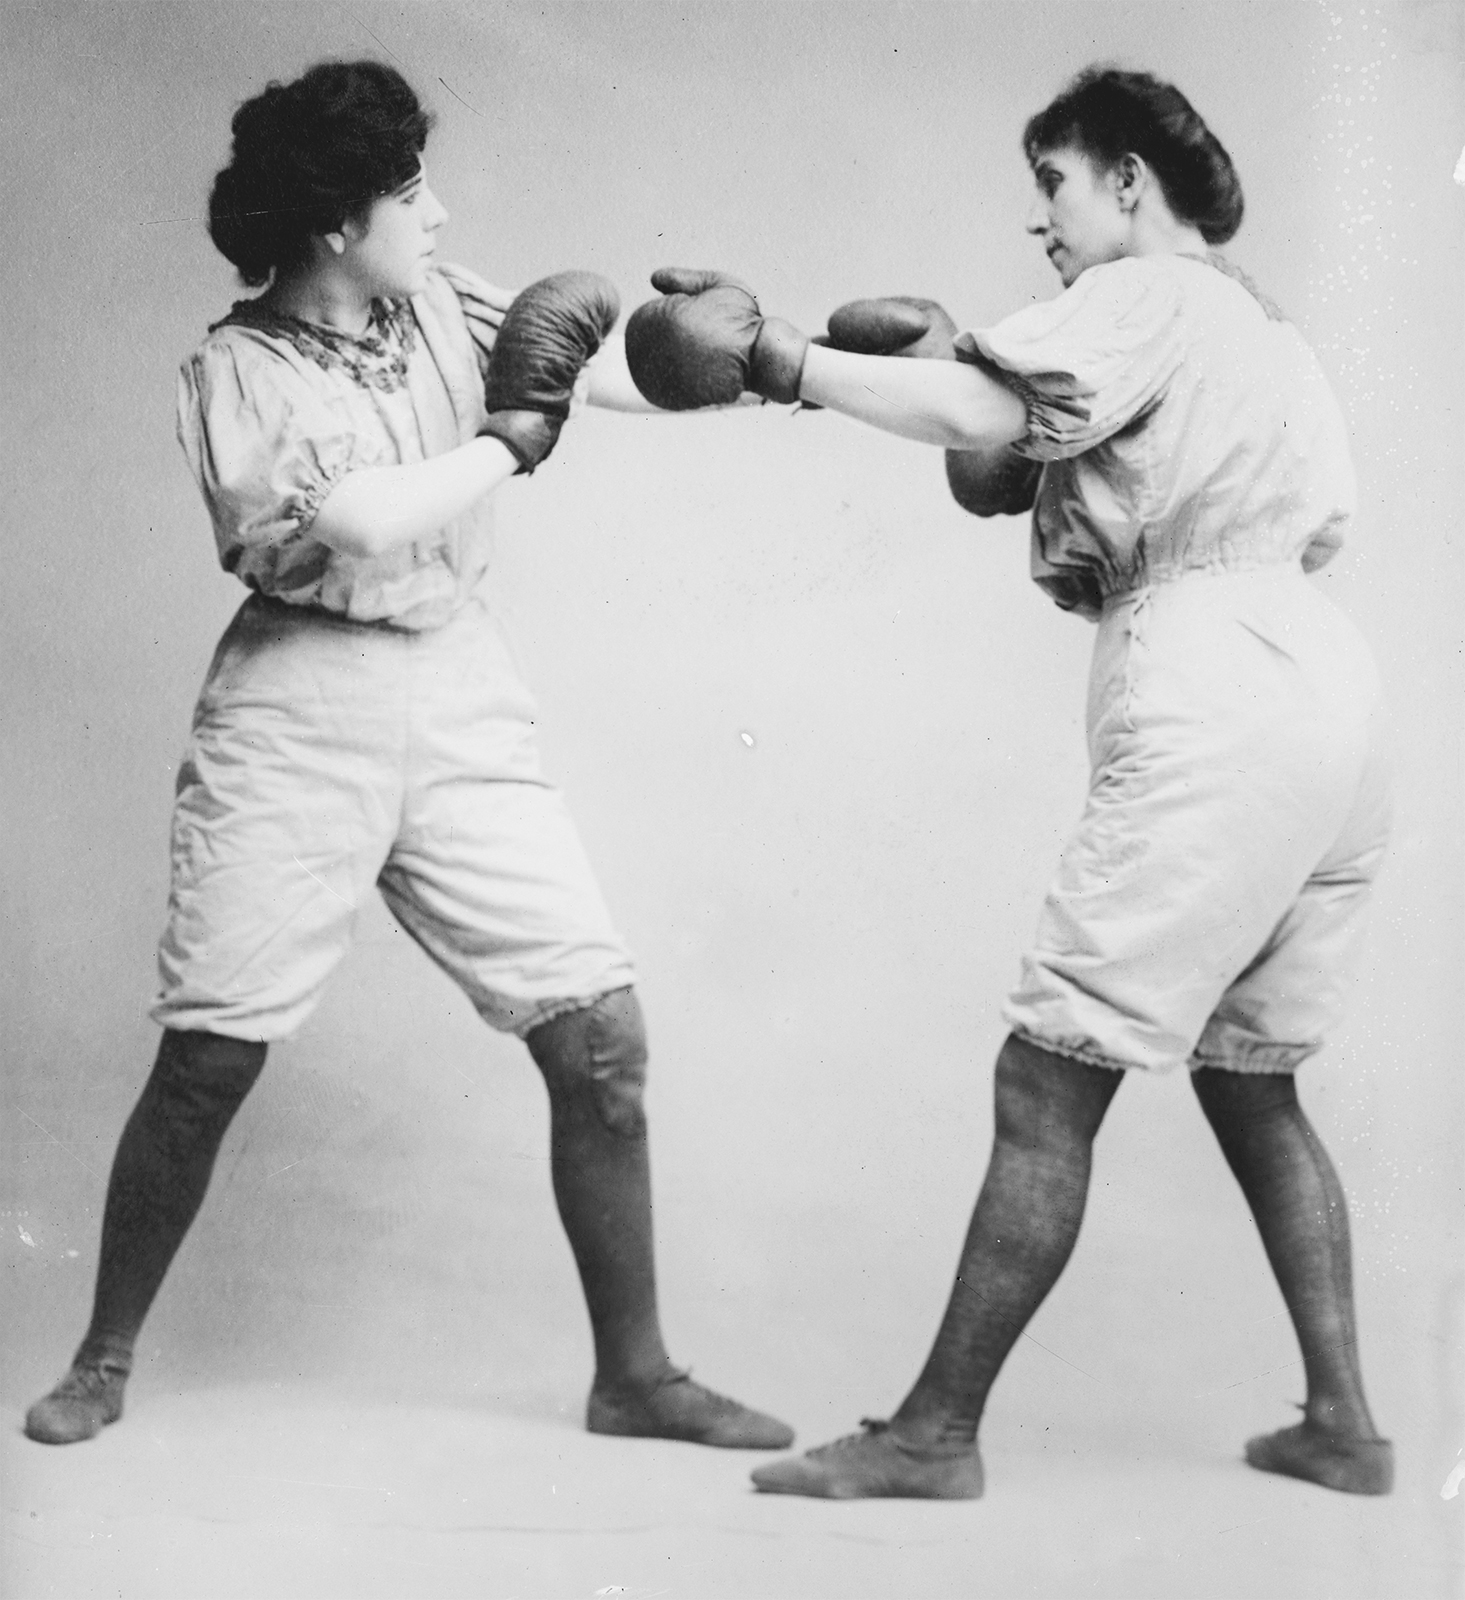 Deux femmes de la fin du 19e siècle en train de boxer.